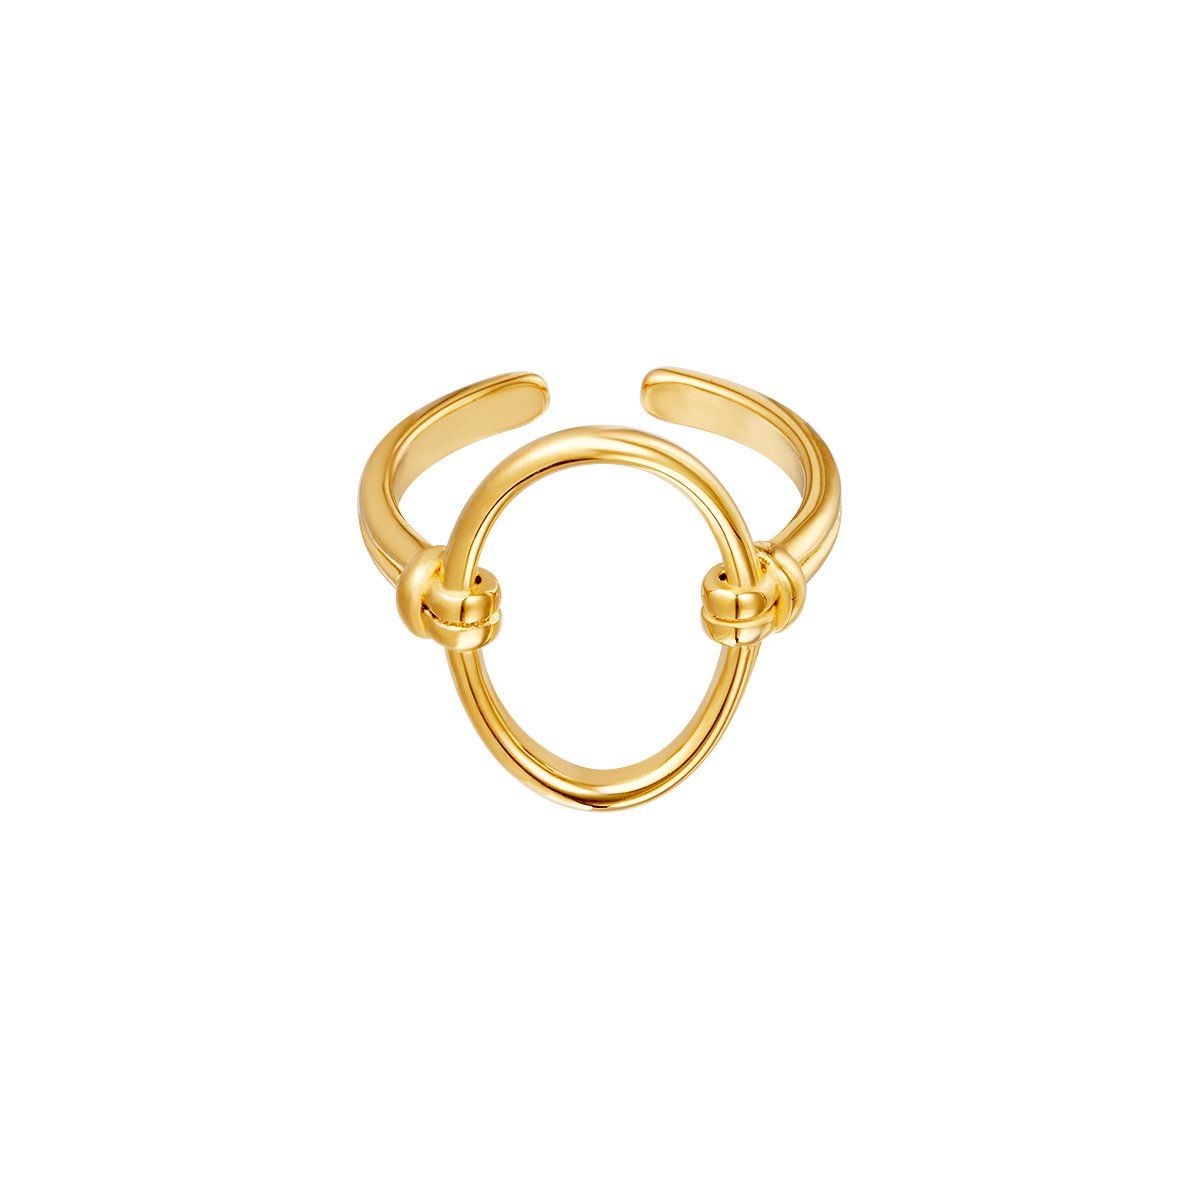 Jobo by Jet - Never ending ring - verstelbaar - Grote statement ring - Dames ring - One size - Verkleurd niet - RVS